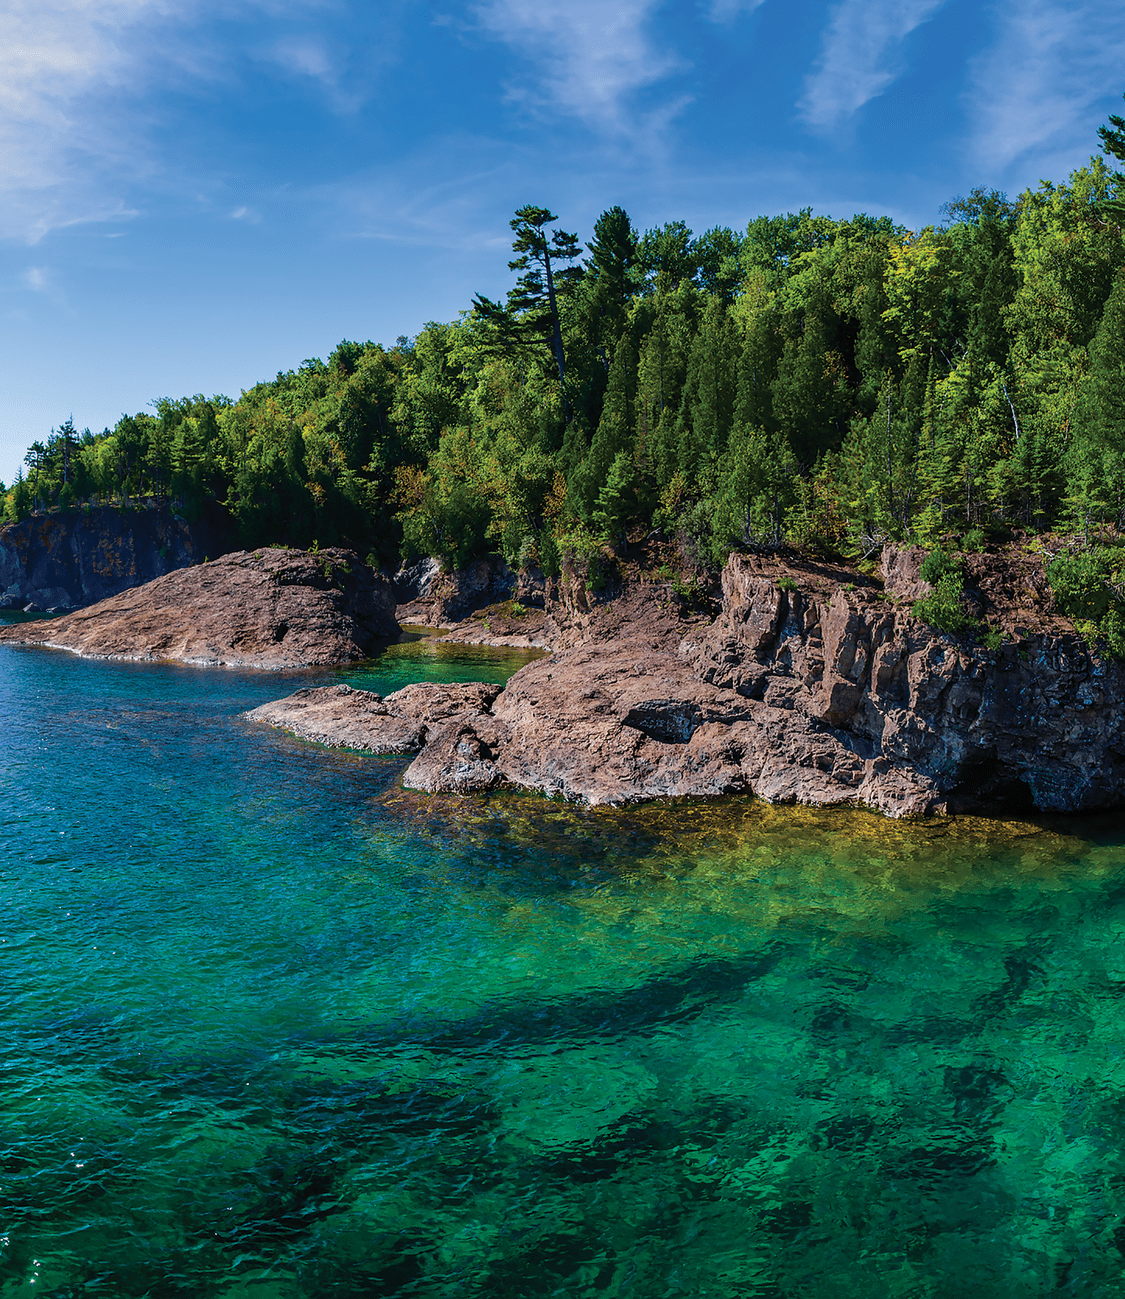 The rugged yet beautiful coastline of Lake Superior